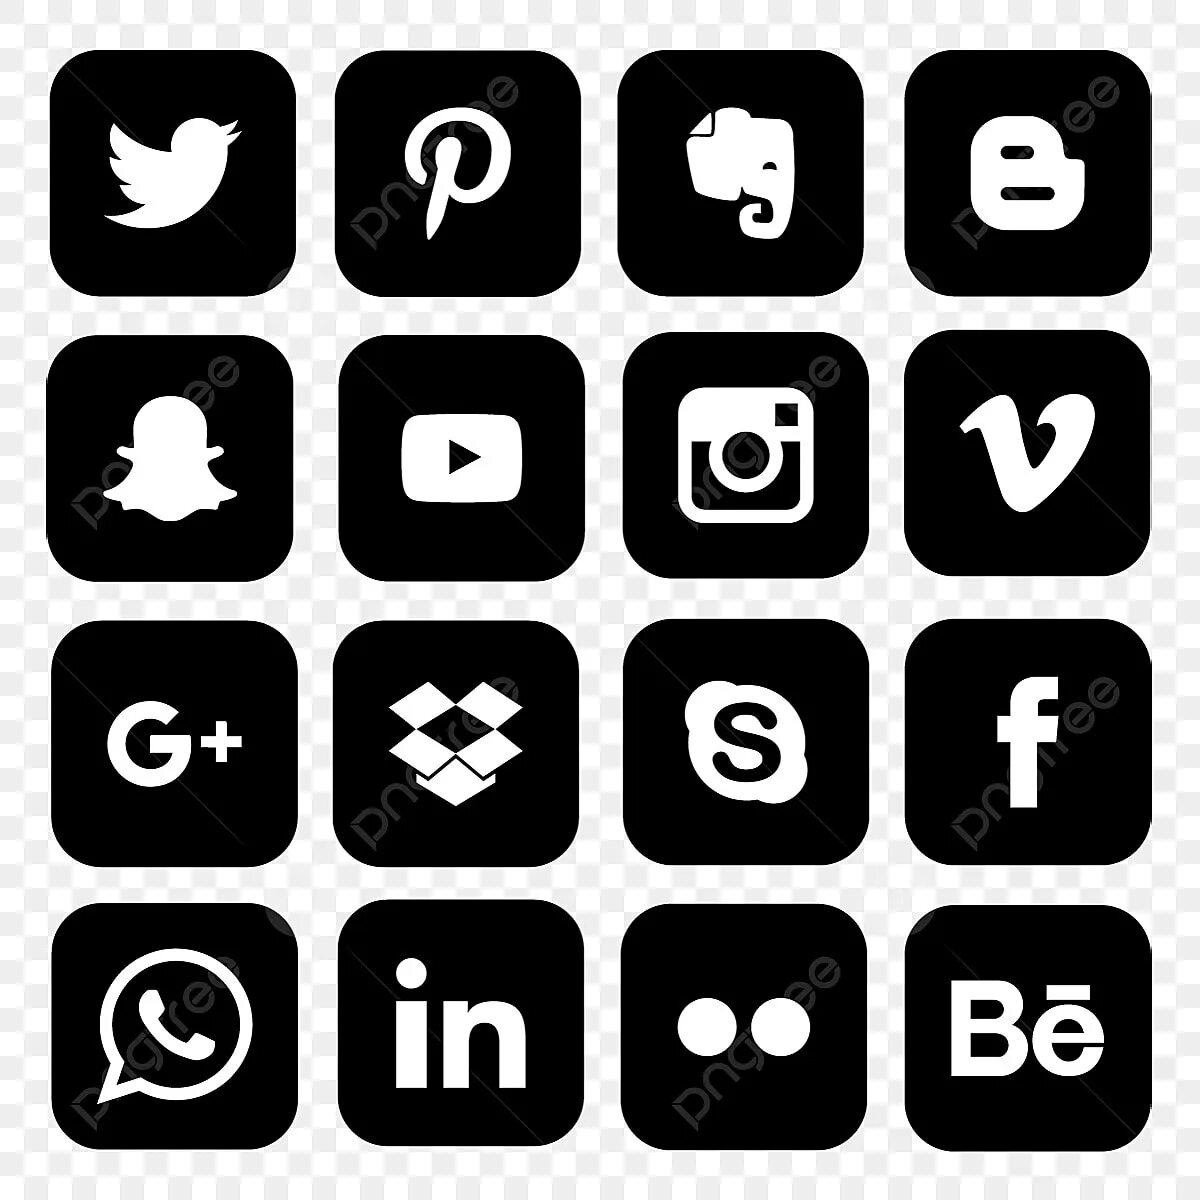 Бел соц сеть. Значки соцсетей. Иконки соц сетей. Черно белые иконки социальных сетей. Чёрно-белые иконки приложений.